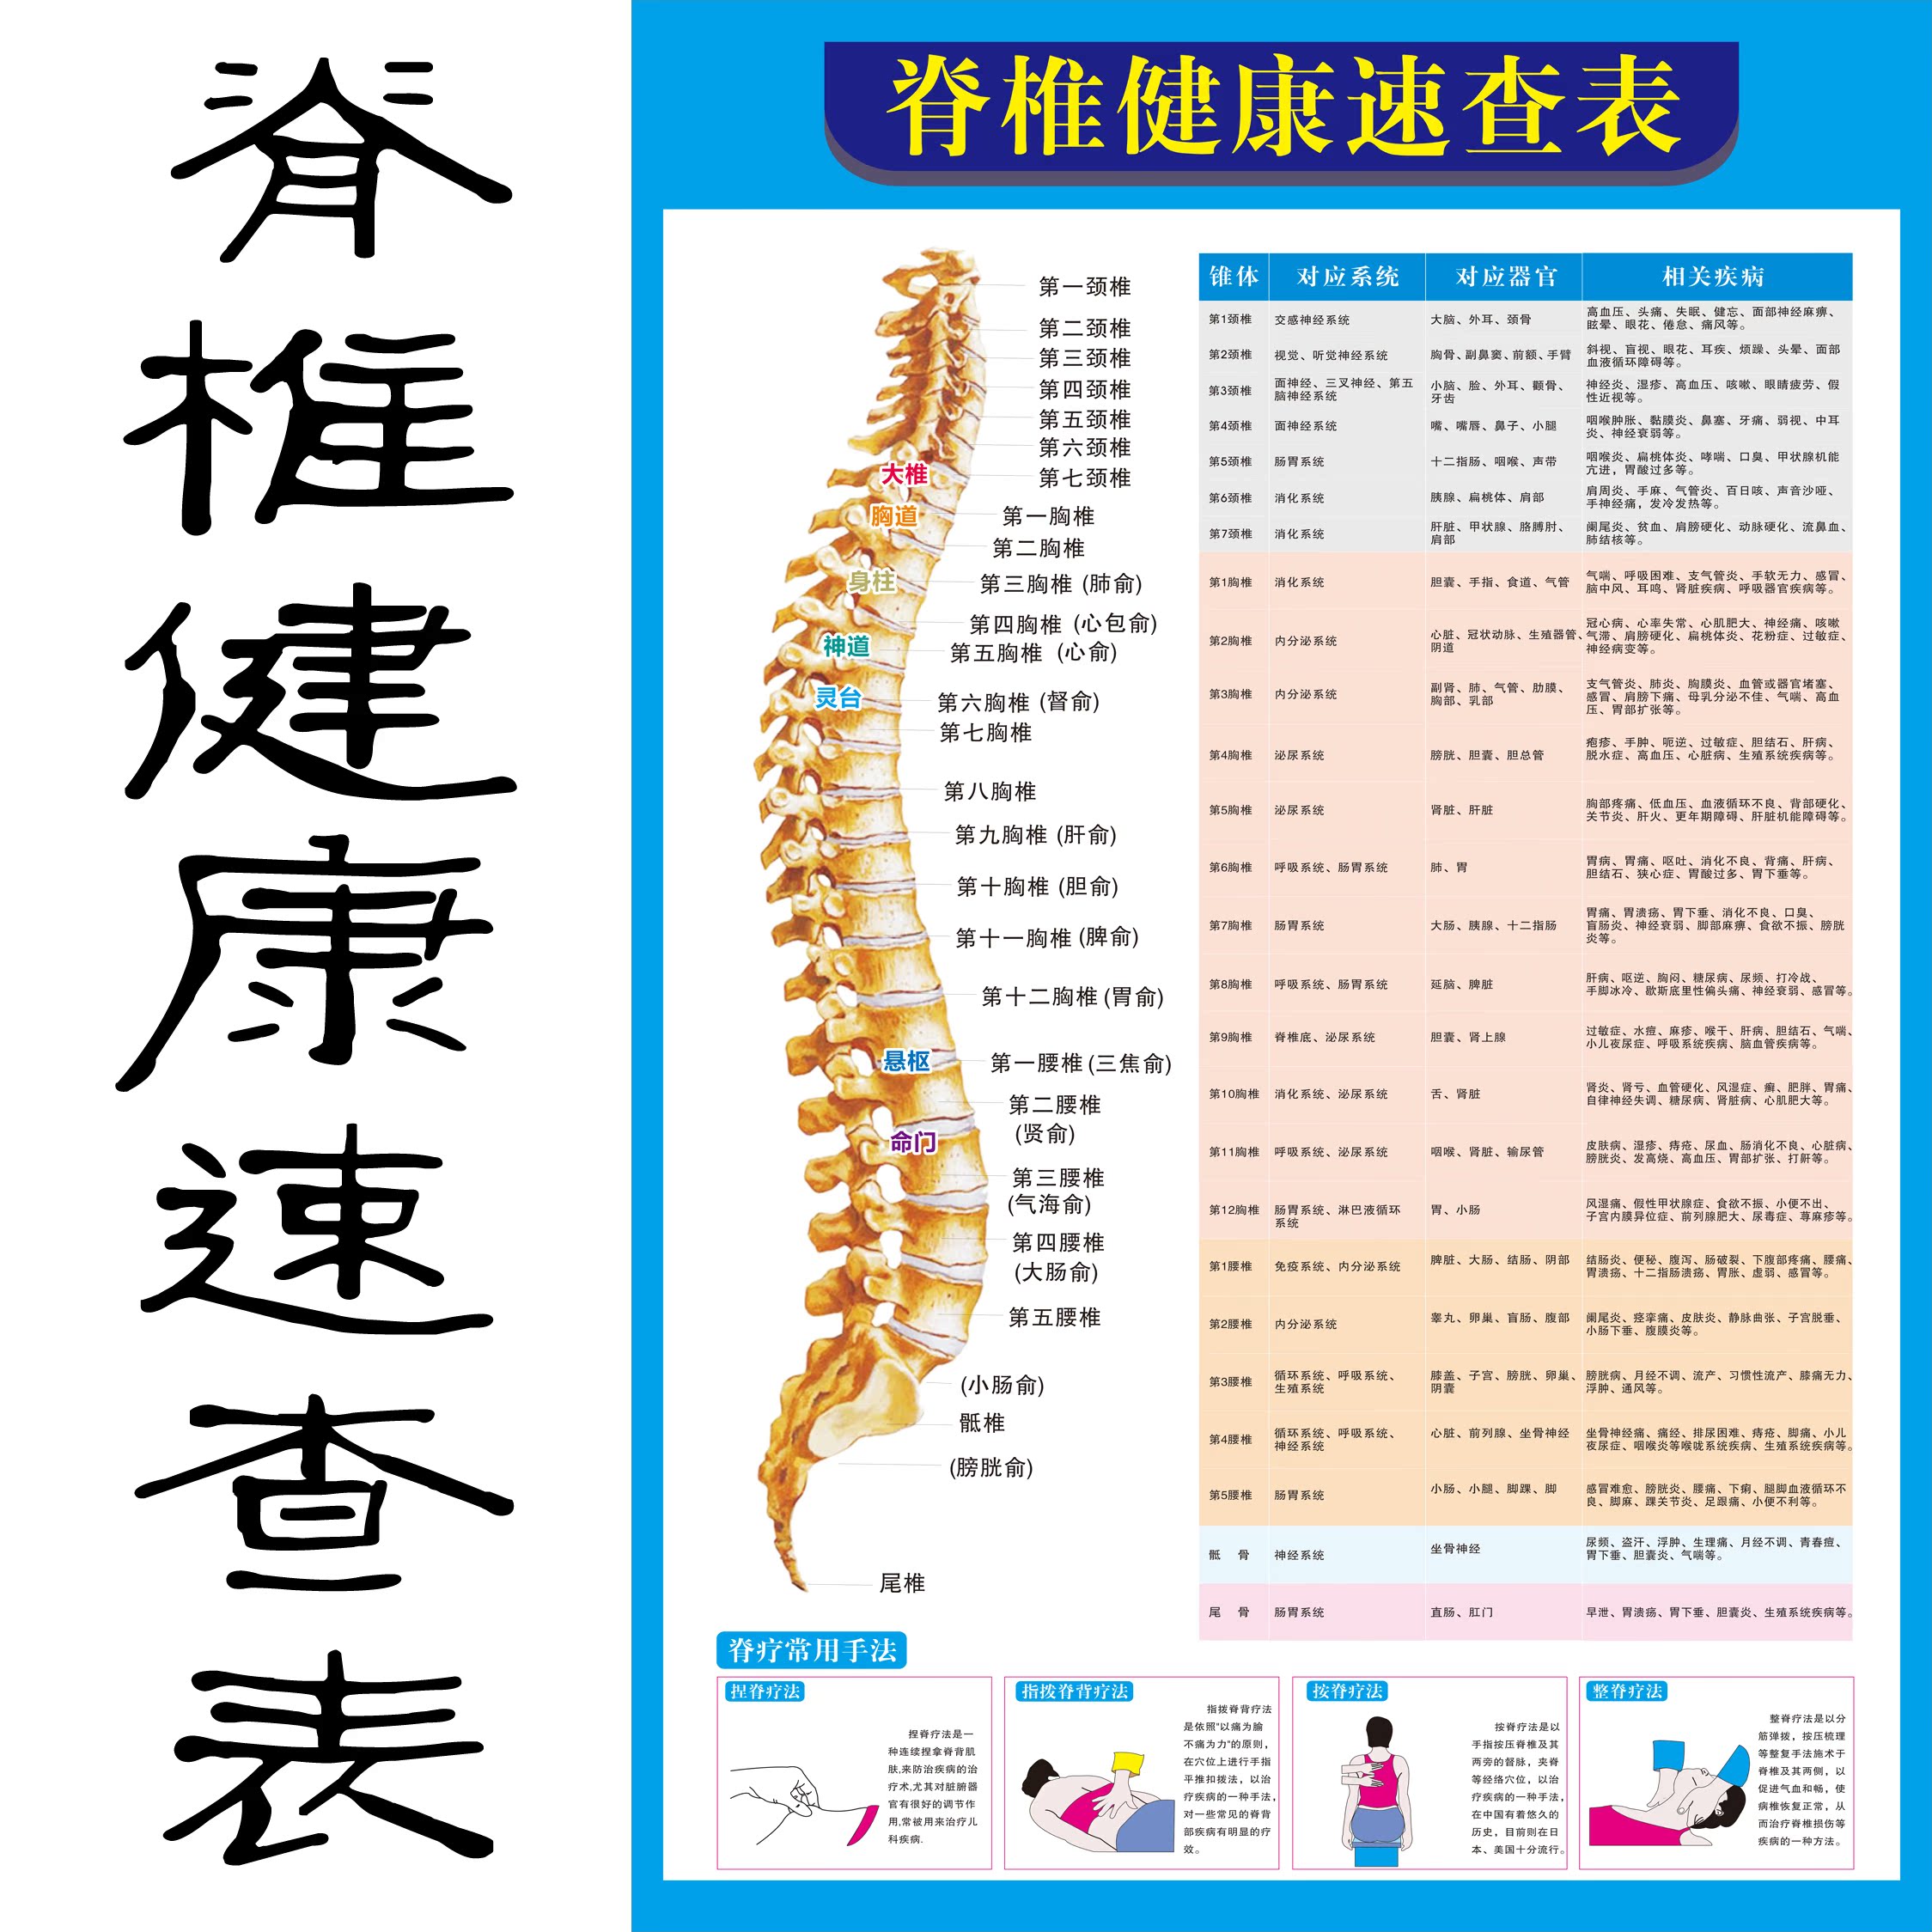 脊椎相关疾病示意图脊柱医学宣传挂图人体器官解剖图医院布置海报